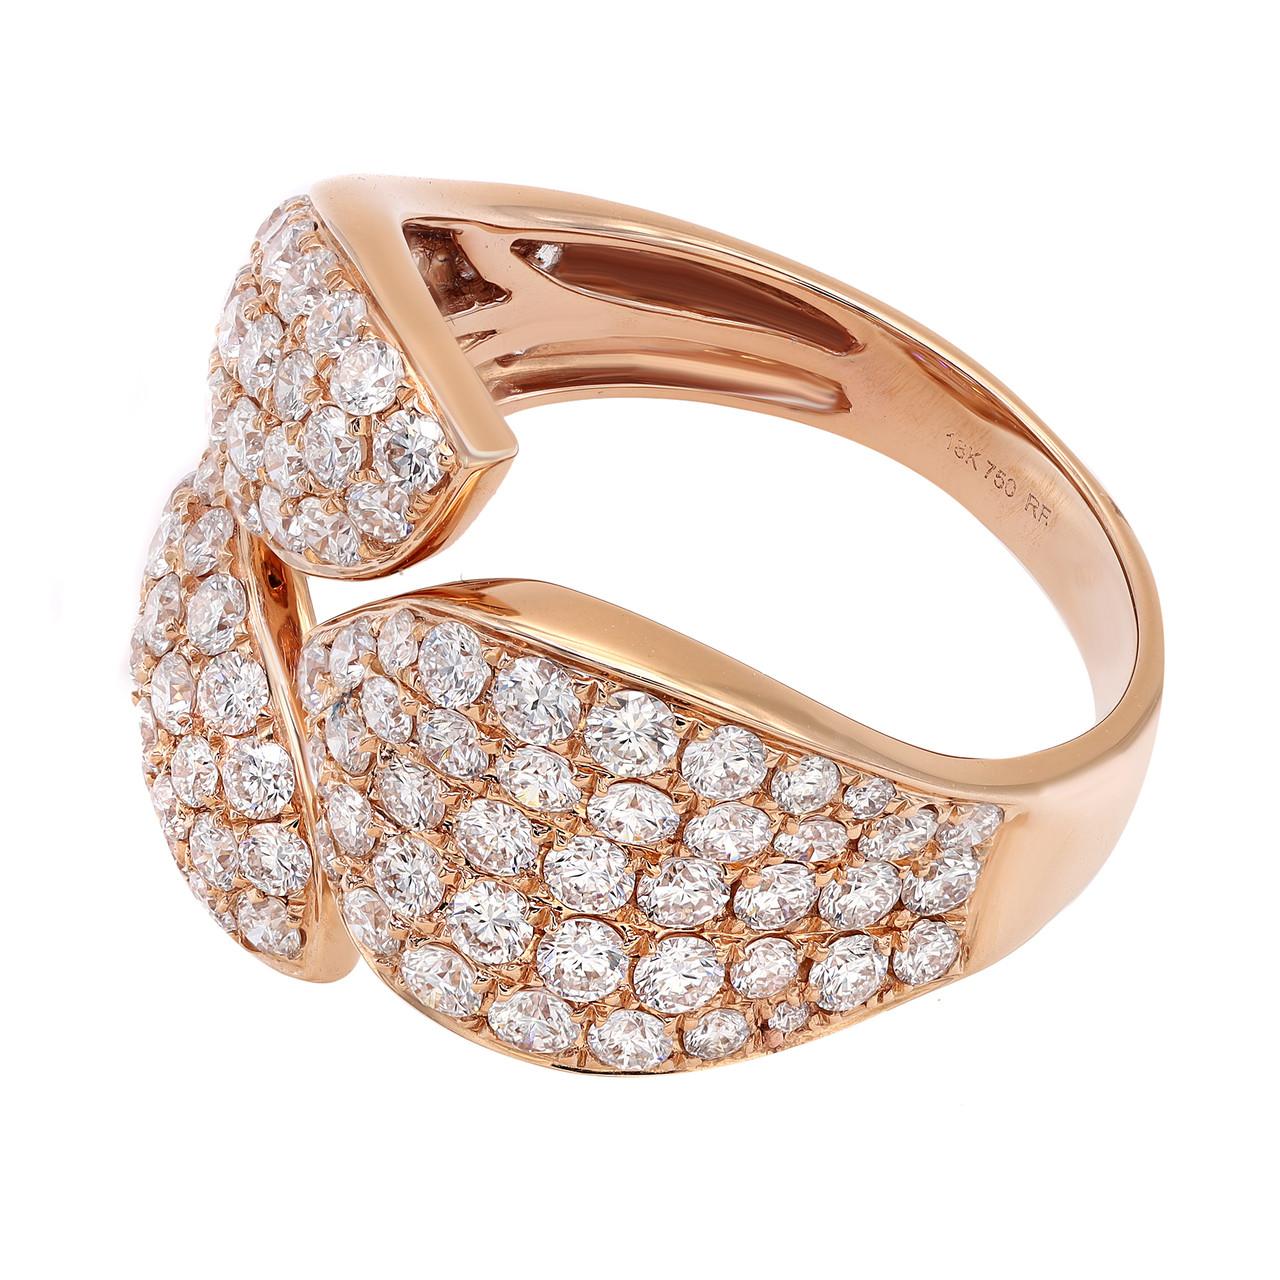 Erhöhen Sie Ihren Stil mit dem atemberaubenden 2,00 Karat Pave Set Round Cut Diamond Ring in 18K Rose Gold. Dieser bezaubernde Ring verbindet Eleganz mit einem Hauch von Laune. Er wurde mit Präzision gefertigt und zeichnet sich durch ein brillantes